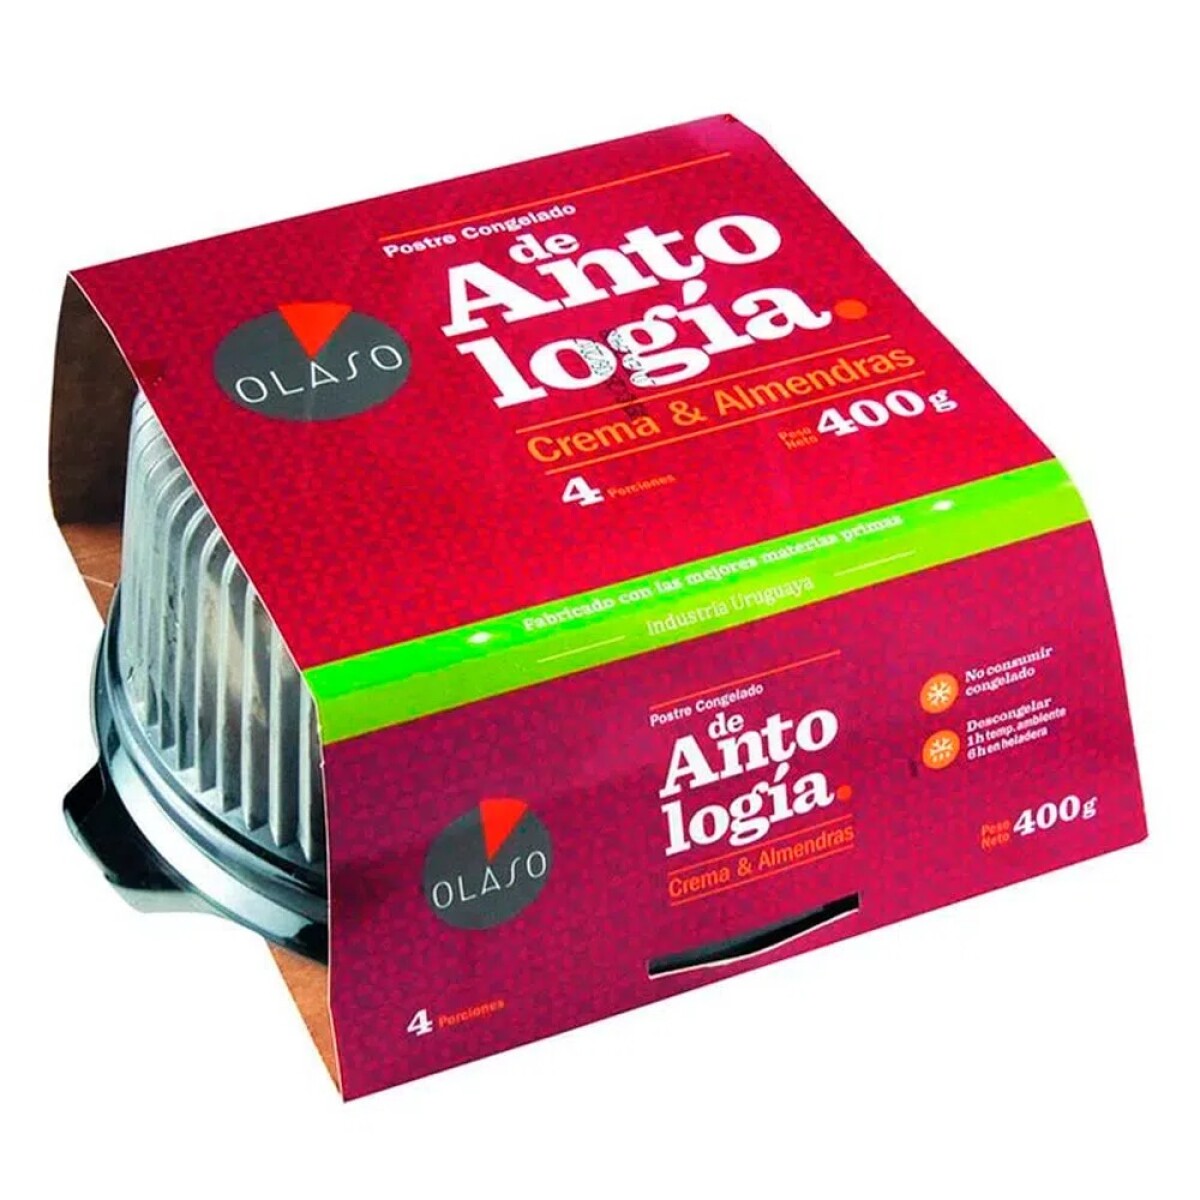 Torta Antología baby Olaso - 400 gr 